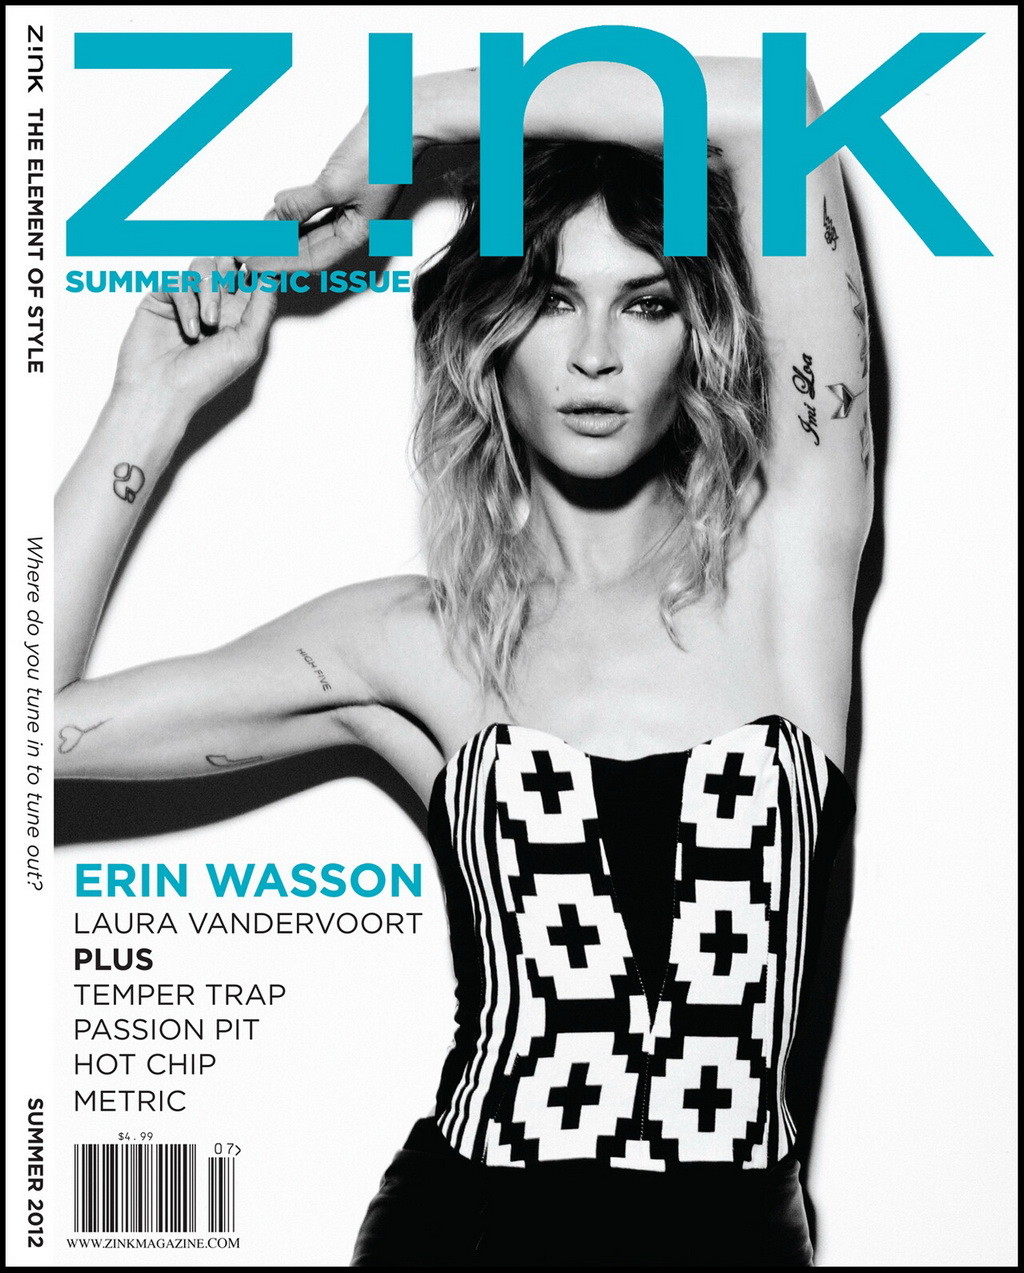 Erin wasson mostrando su cuerpo totalmente desnudo en la revista zink edición verano 2012
 #75258797